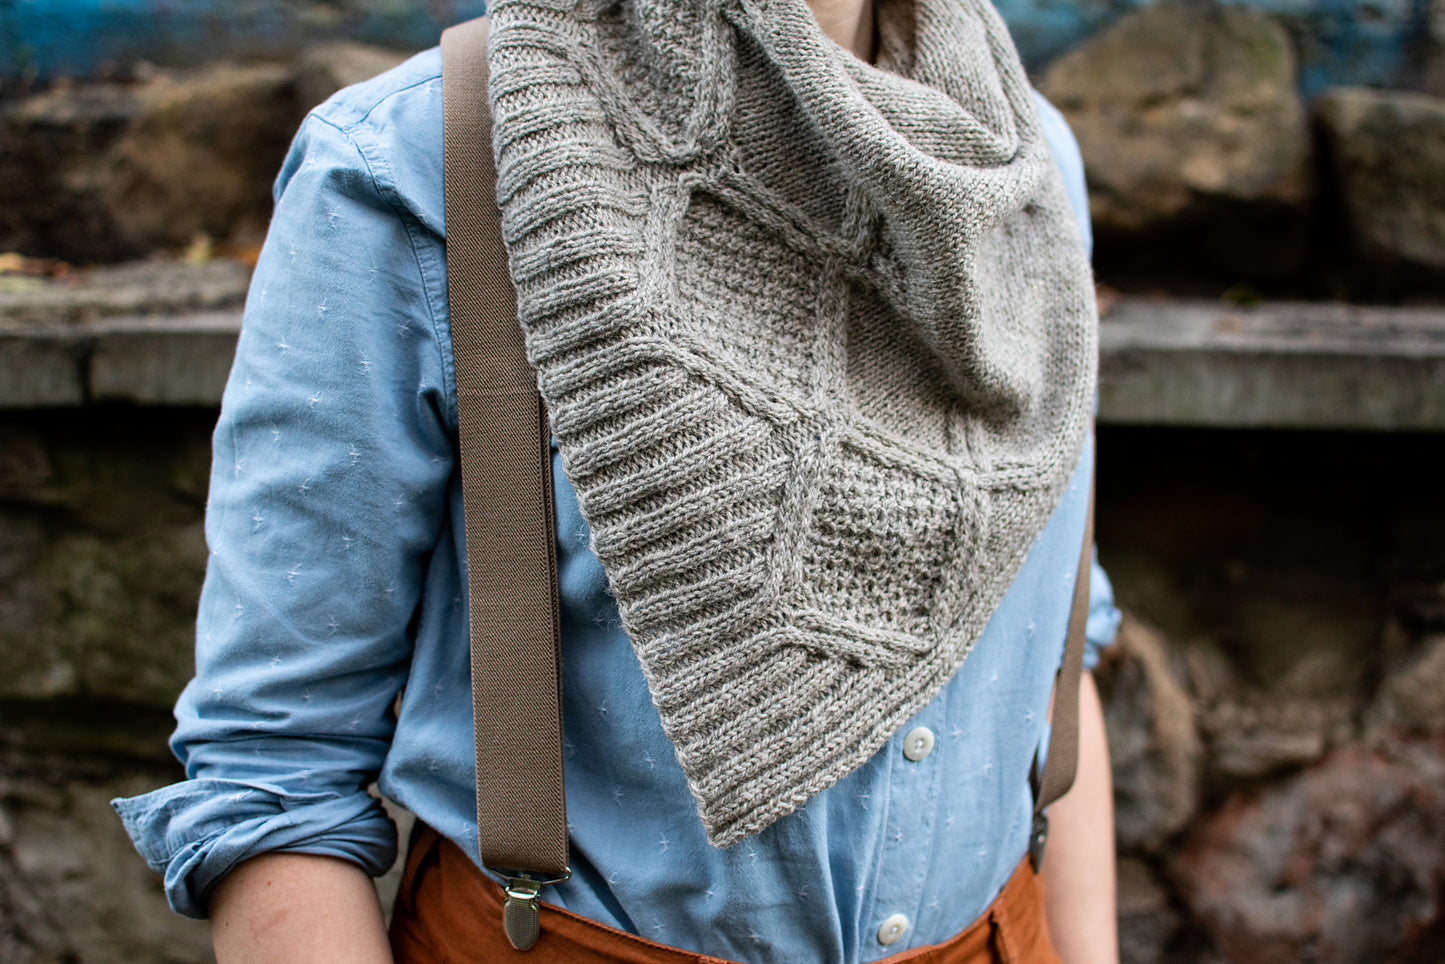 Llawenydd shawl knitting pattern by Ysolda Teague